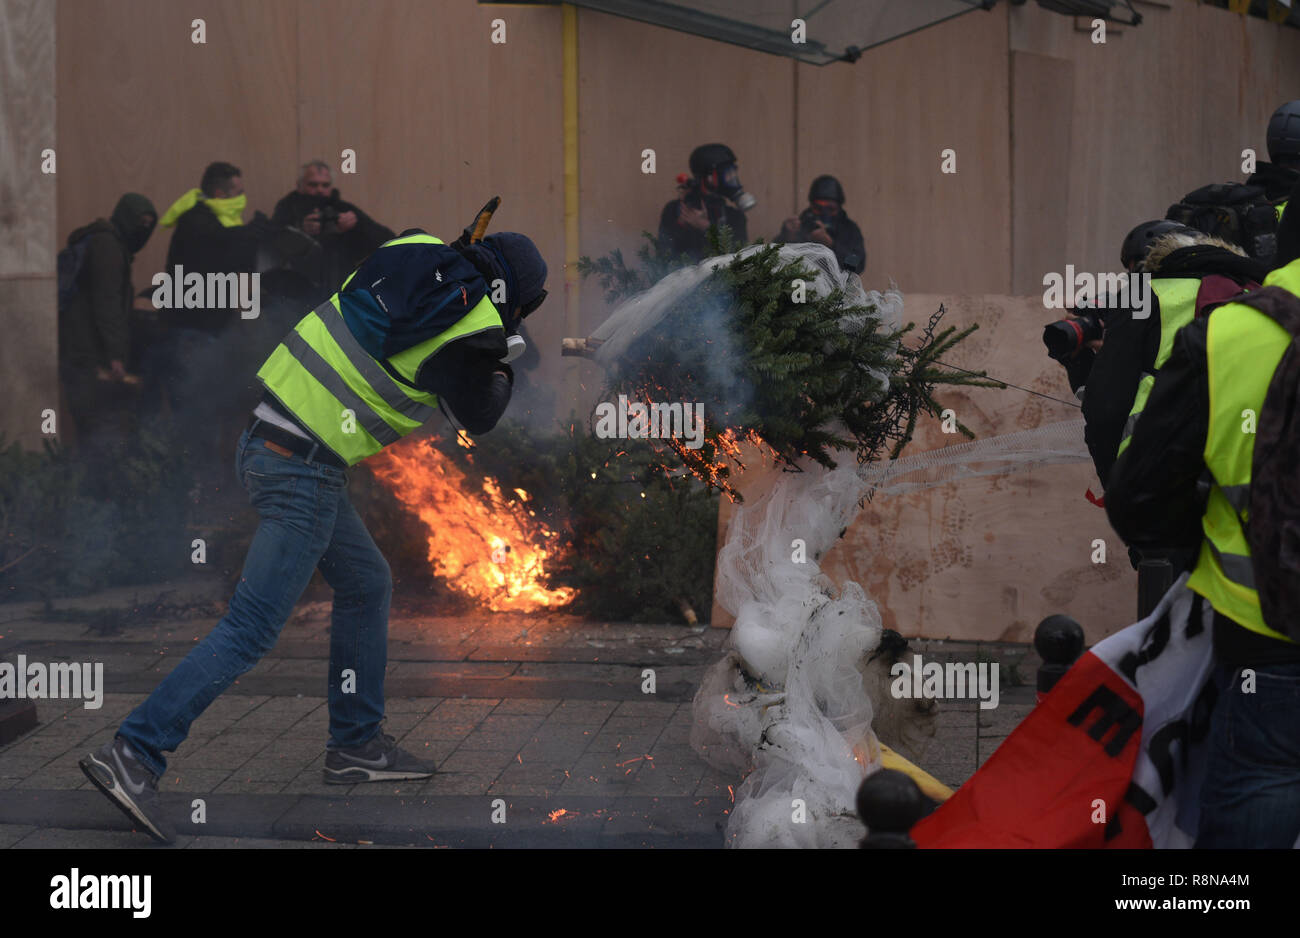 Décembre 08, 2018 - Paris, France : Gilet jaune protestataires construire  une barricade faite d'arbres de Noël feu car ils entrent en conflit avec la  police anti-émeute sur l'avenue des Champs-Élysées. Manifestation